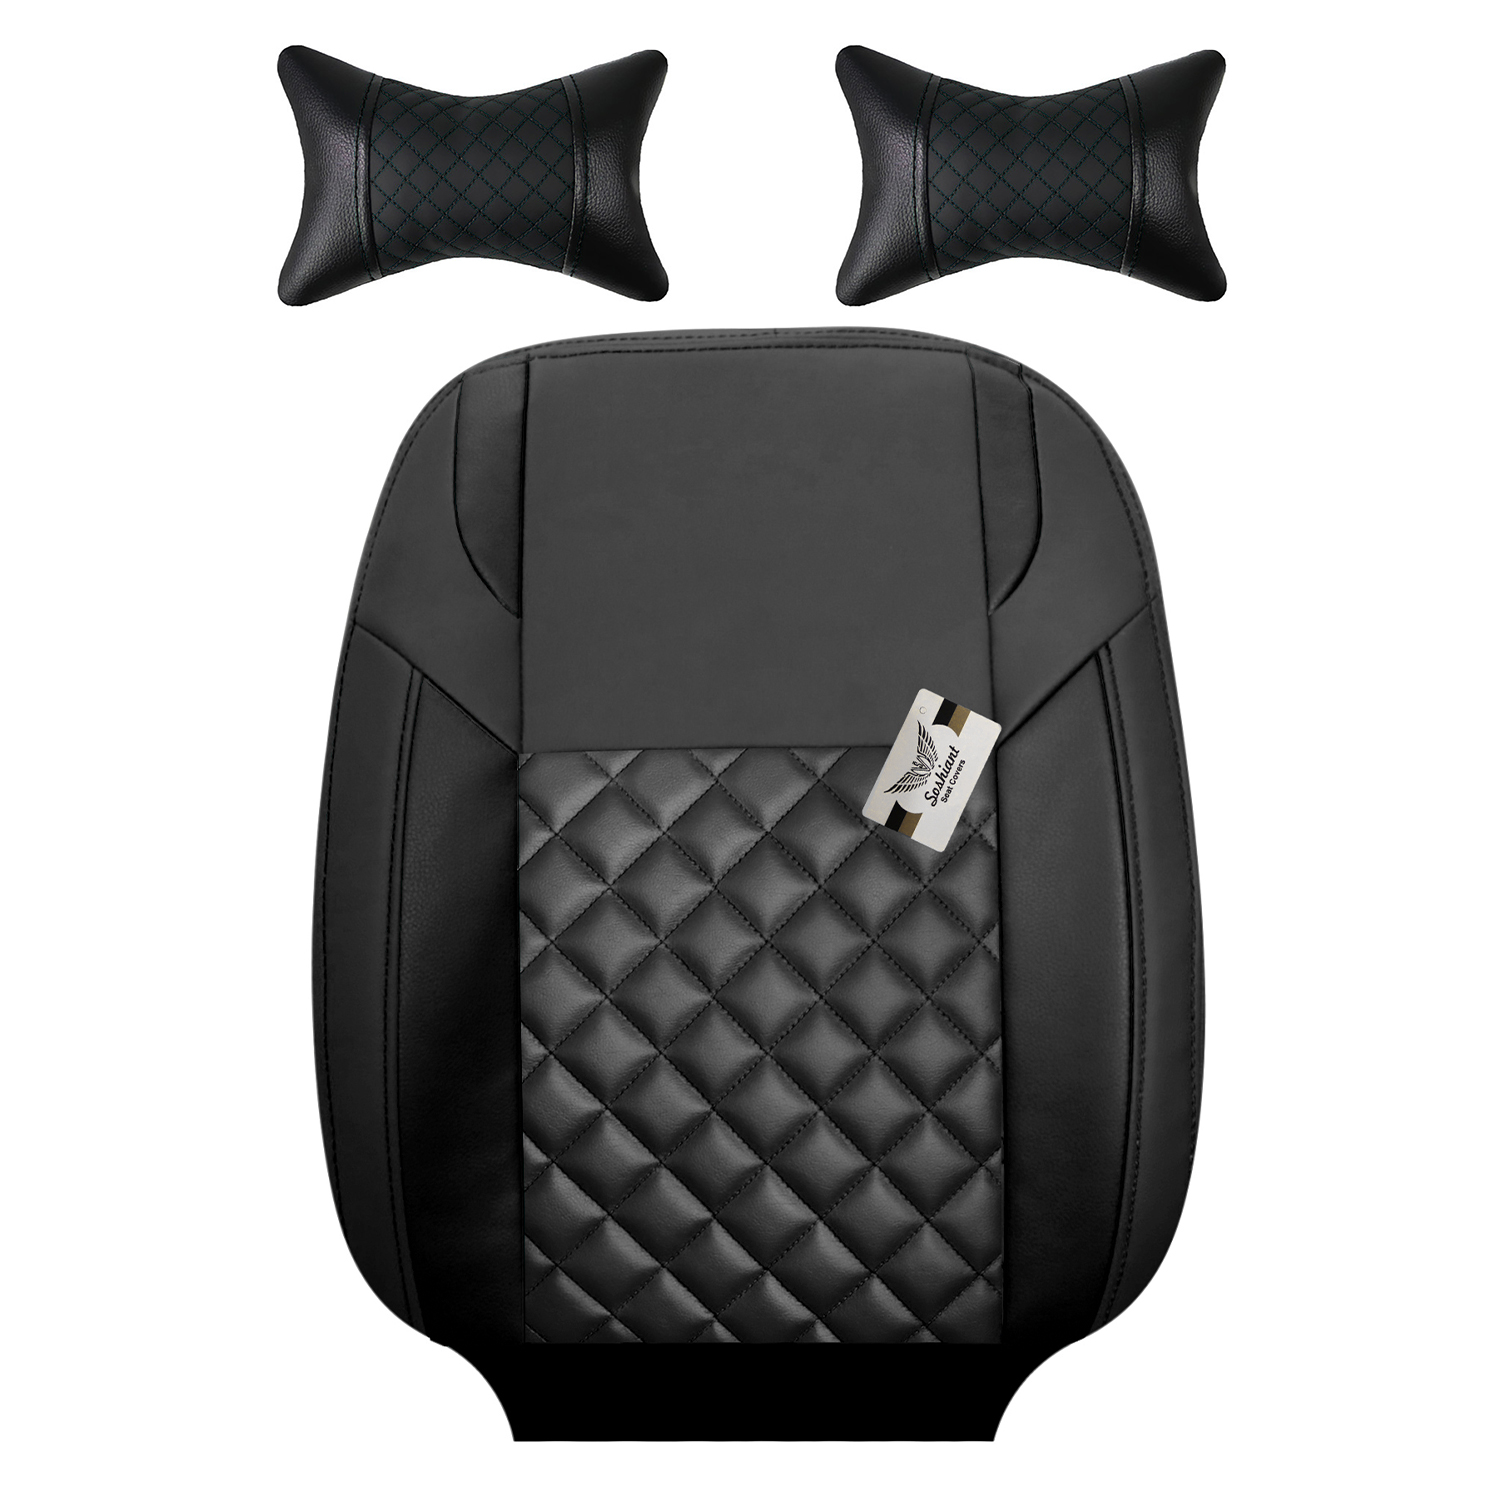 نکته خرید - قیمت روز روکش صندلی خودرو سوشیانت مدل کاج مناسب برای کوییک به همراه پشت گردنی خرید